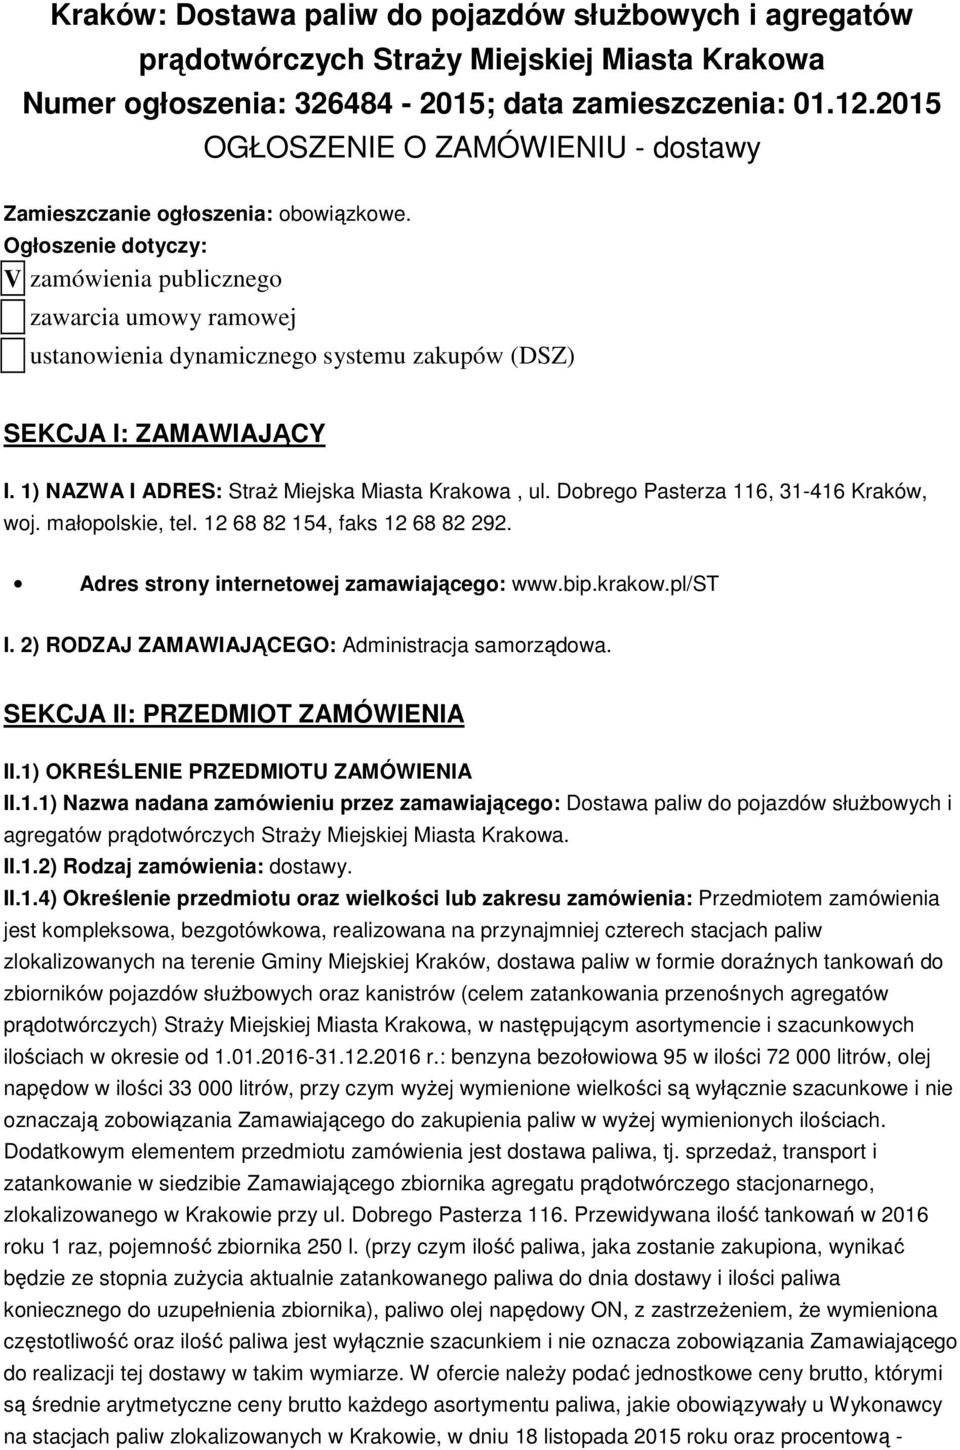 Ogłoszenie dotyczy: V zamówienia publicznego zawarcia umowy ramowej ustanowienia dynamicznego systemu zakupów (DSZ) SEKCJA I: ZAMAWIAJĄCY I. 1) NAZWA I ADRES: Straż Miejska Miasta Krakowa, ul.